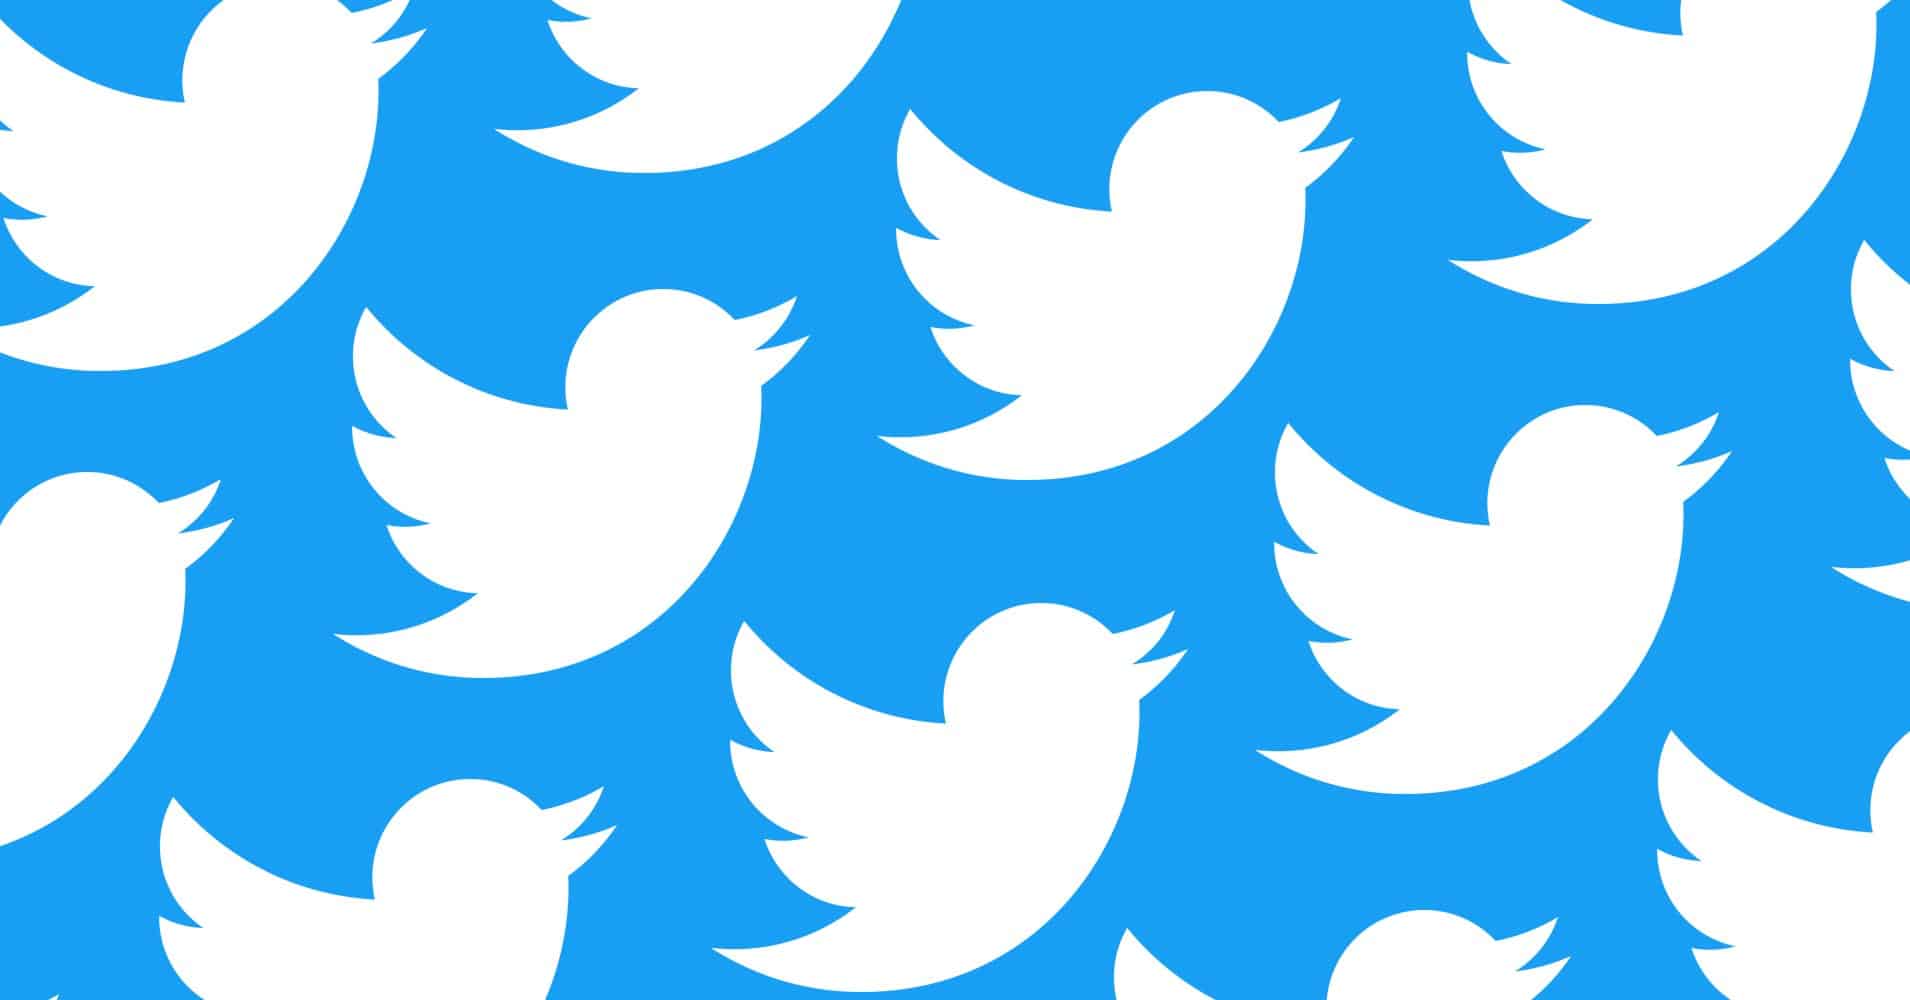 سياسة تويتر قد تفرض رقابة مؤقتة على كل تغريداتك